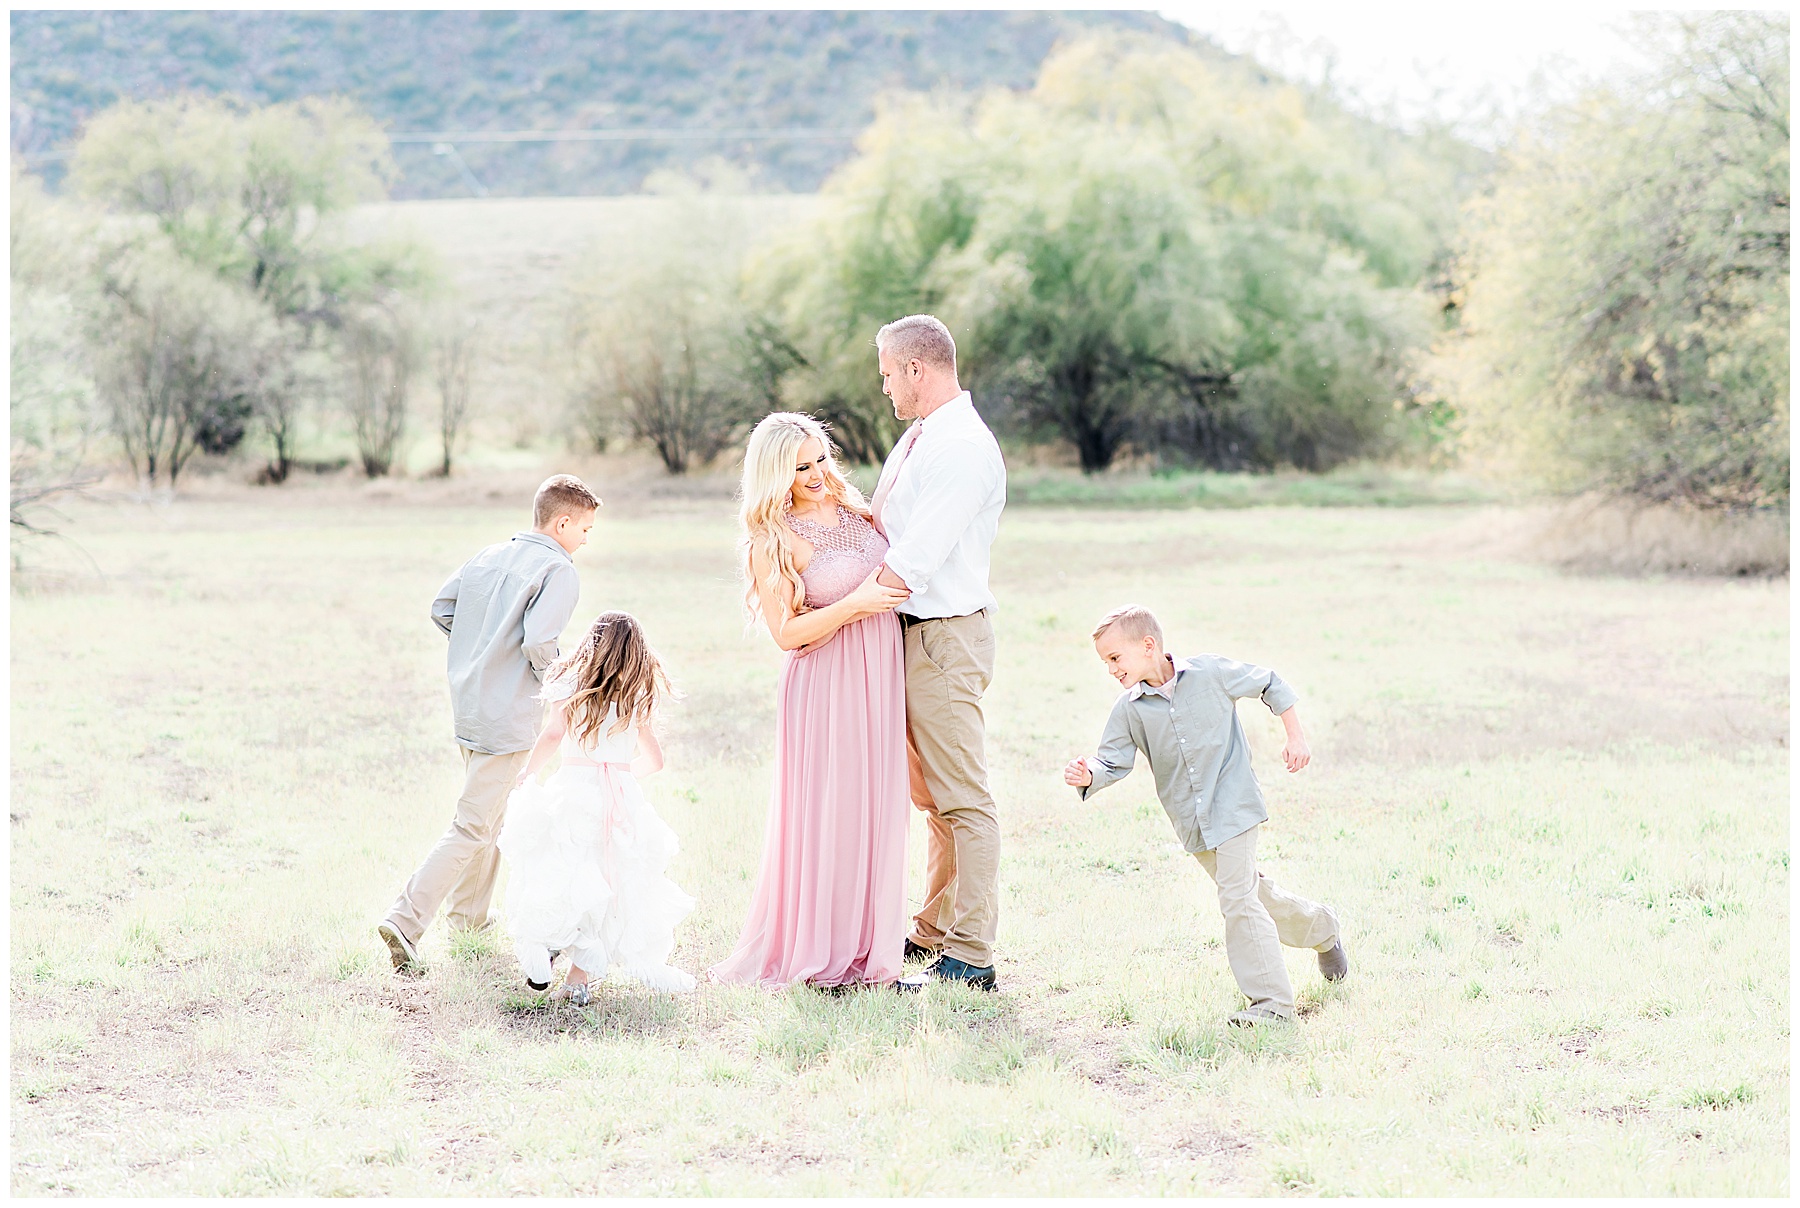 Cooper's-Family-Maternity-Photography-Glendale-Arizona-Ashley-Flug-Photography30-1.jpg